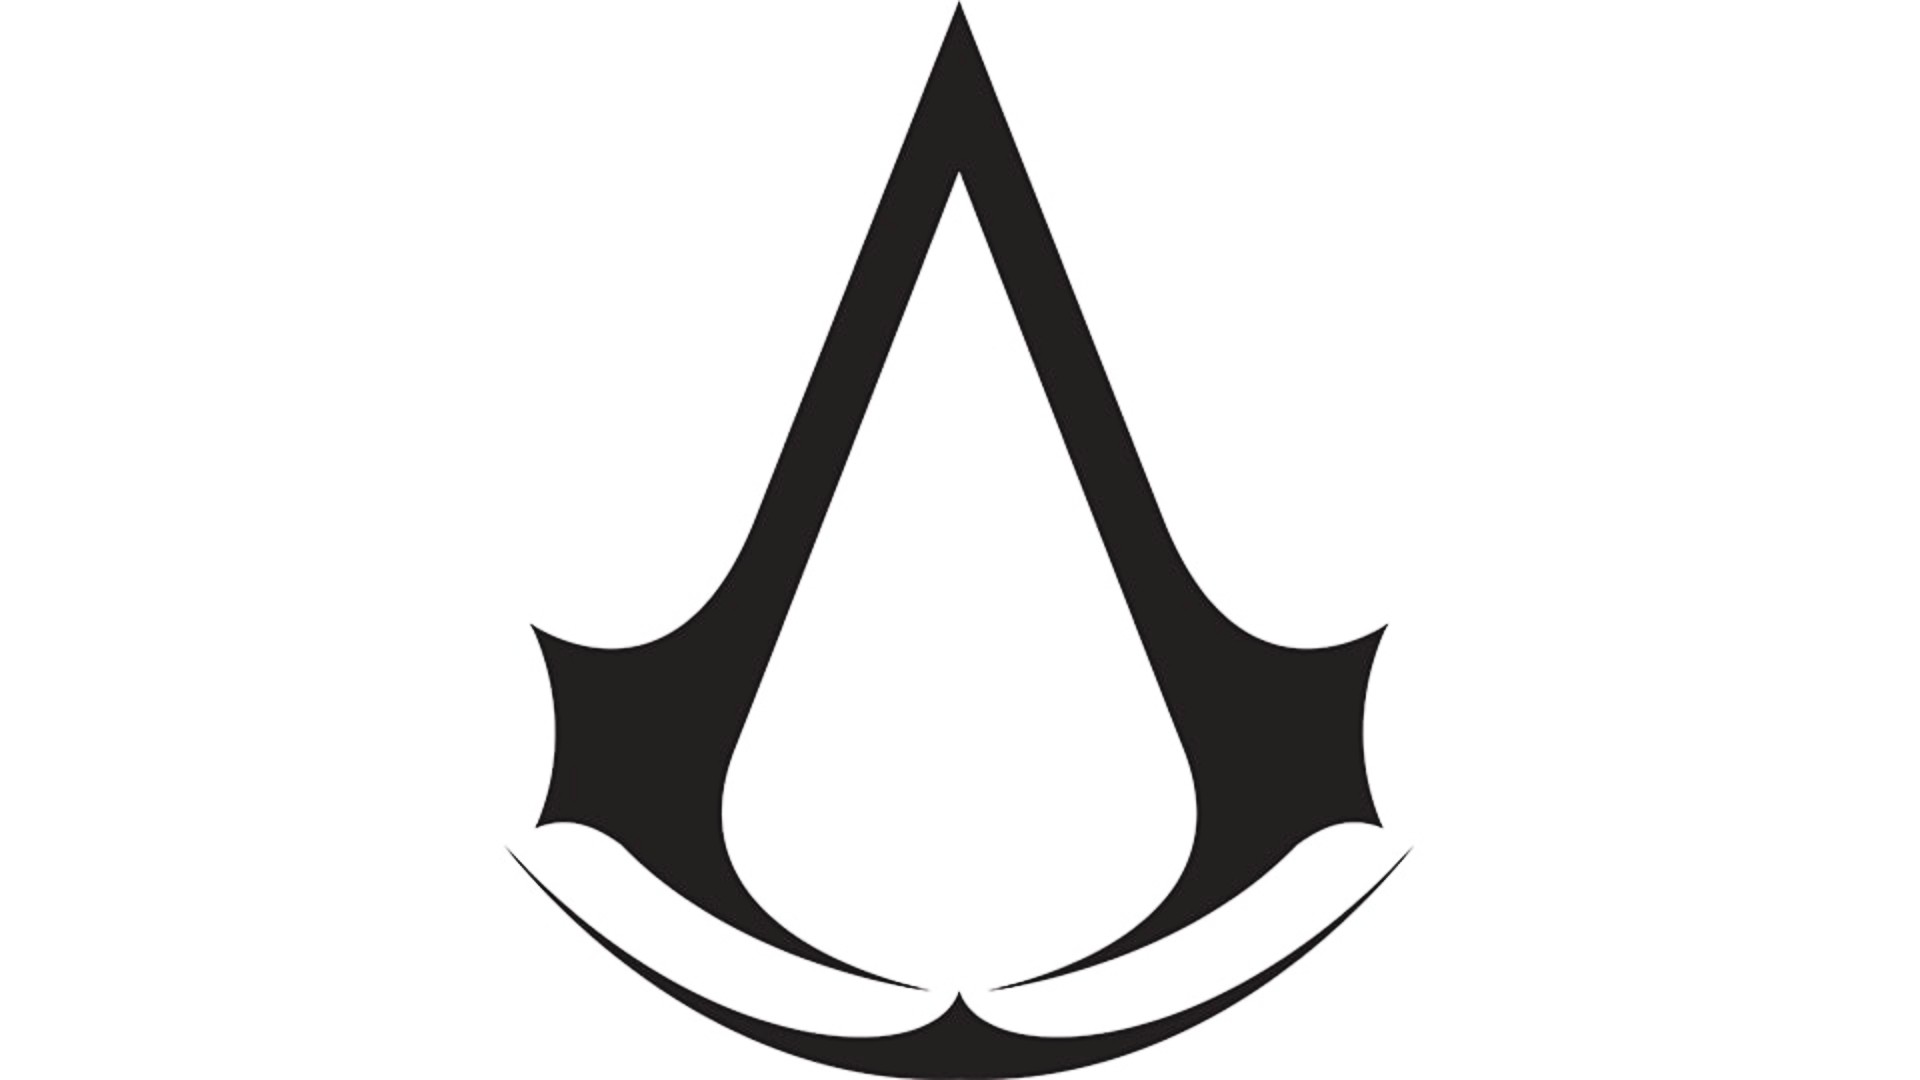 Assassin's Creed Infinity là một dự án xuyên phòng thu từ đội Valhalla và Odyssey